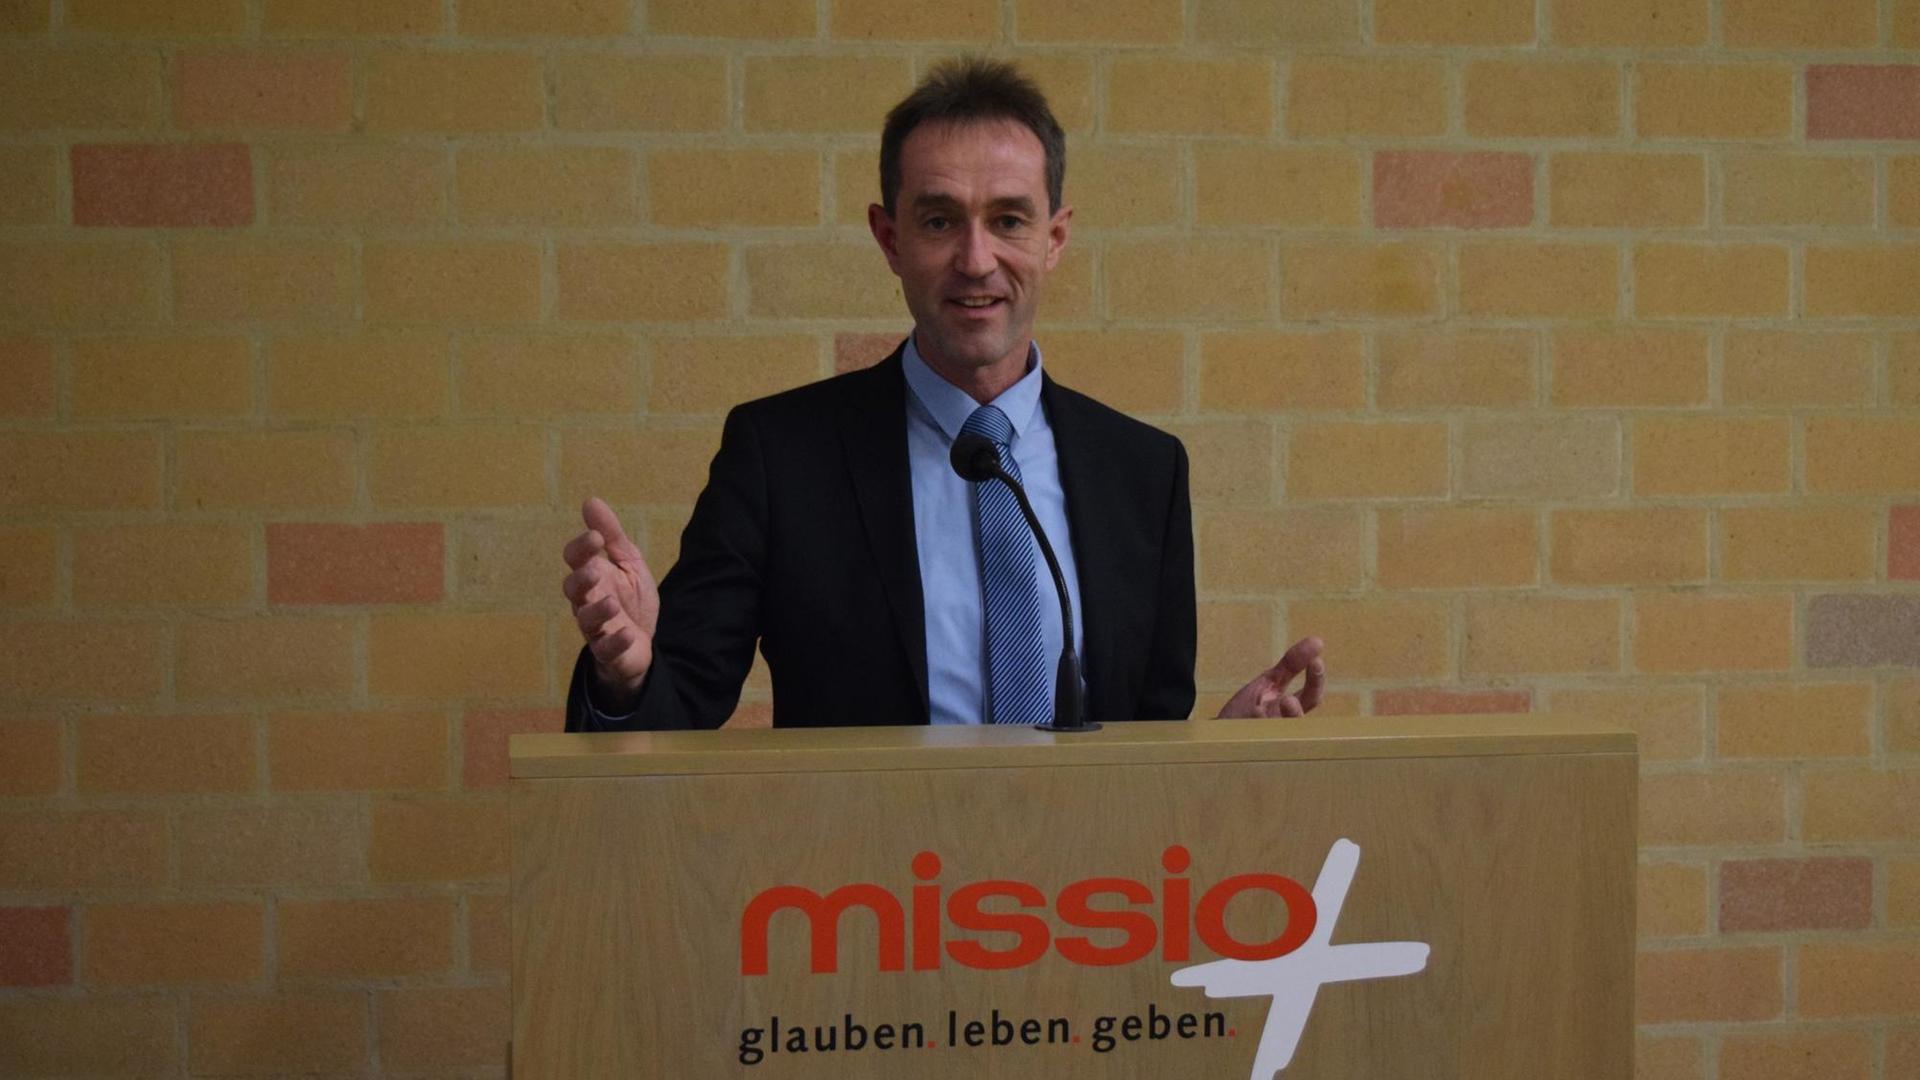 Professor Dr. mult. Klaus Vellguth ist katholischer Theologe und Religionspädagoge